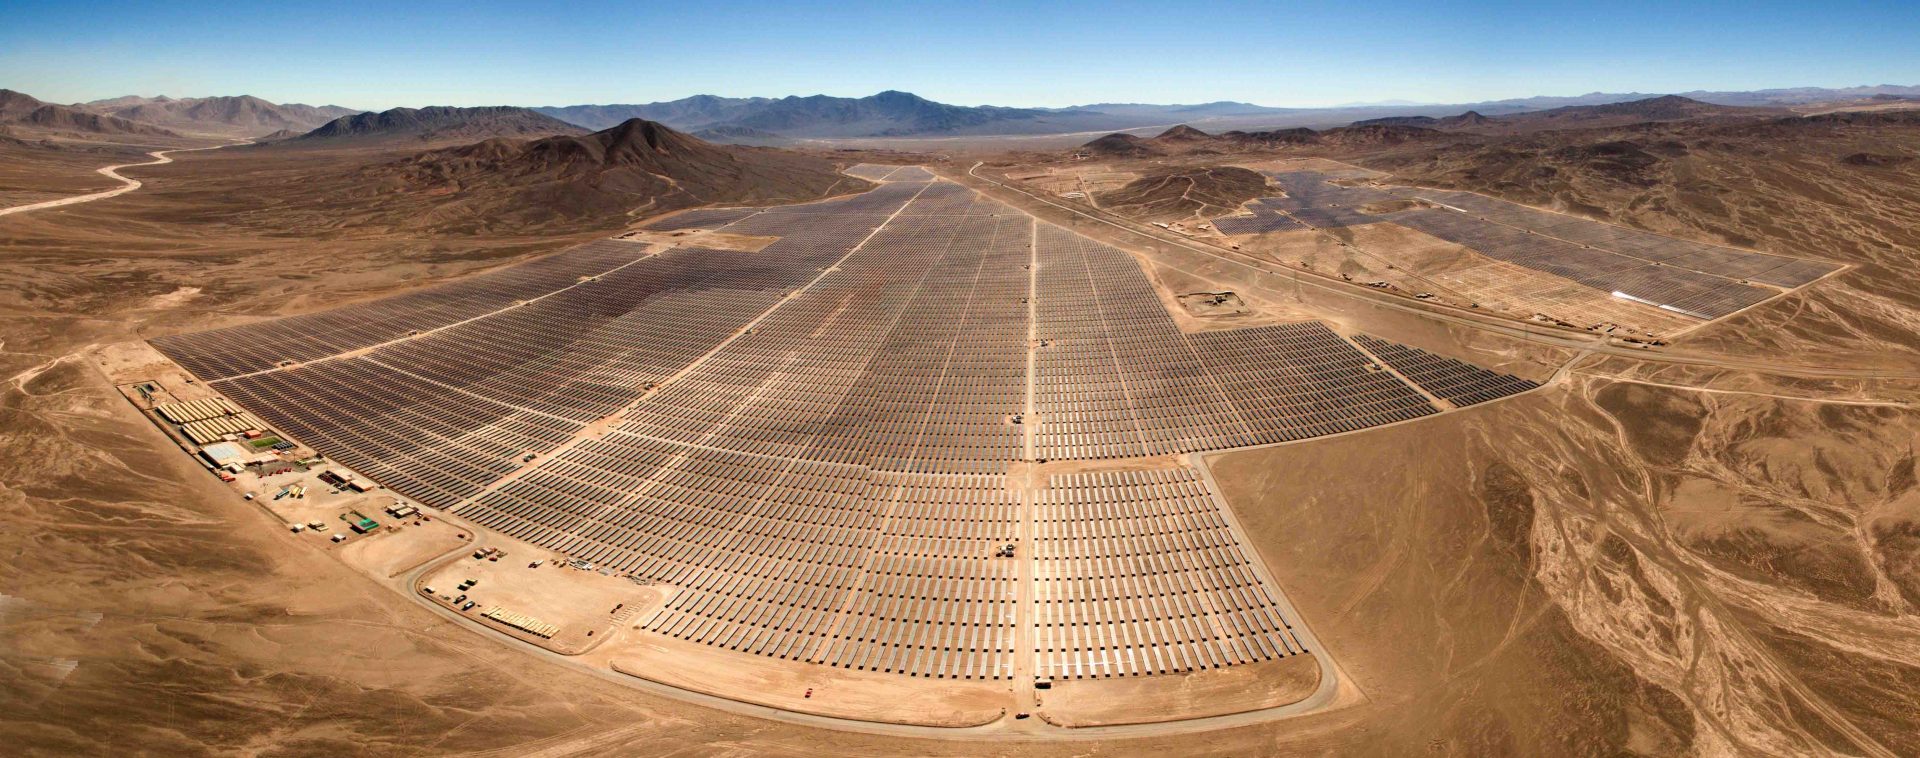 Energie-Giganten: Das sind die größten Solarparks der Welt- Image